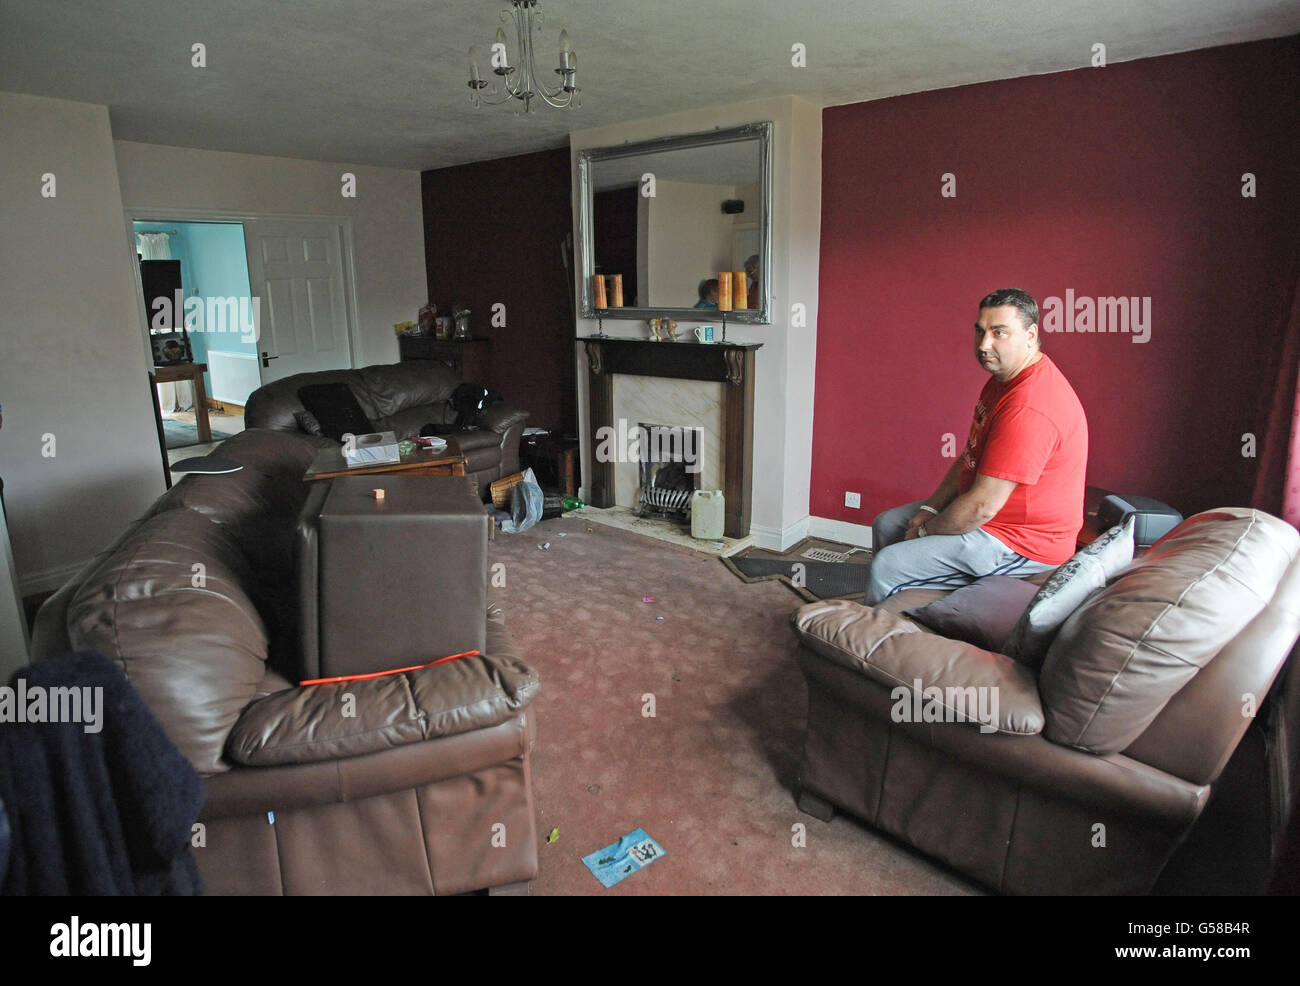 Paul Burrow étudie la salle de séjour endommagée par l'eau dans sa maison de Swillington, Leeds, après que les inondations ont ravagé la région pendant le week-end. Banque D'Images